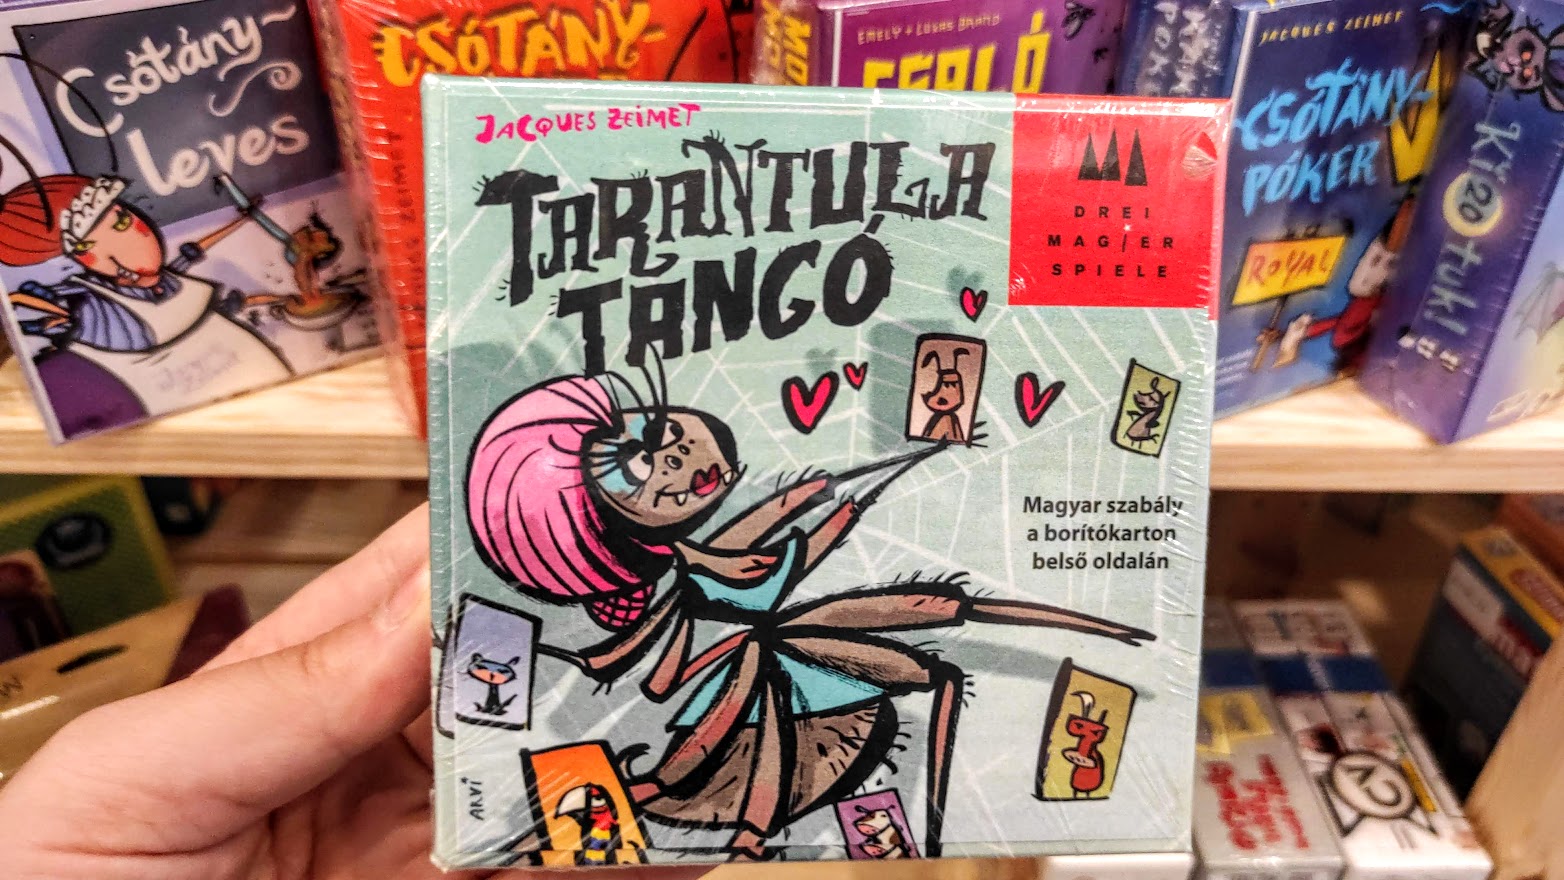 Tarantel Tango (2009), Tarantula tangó